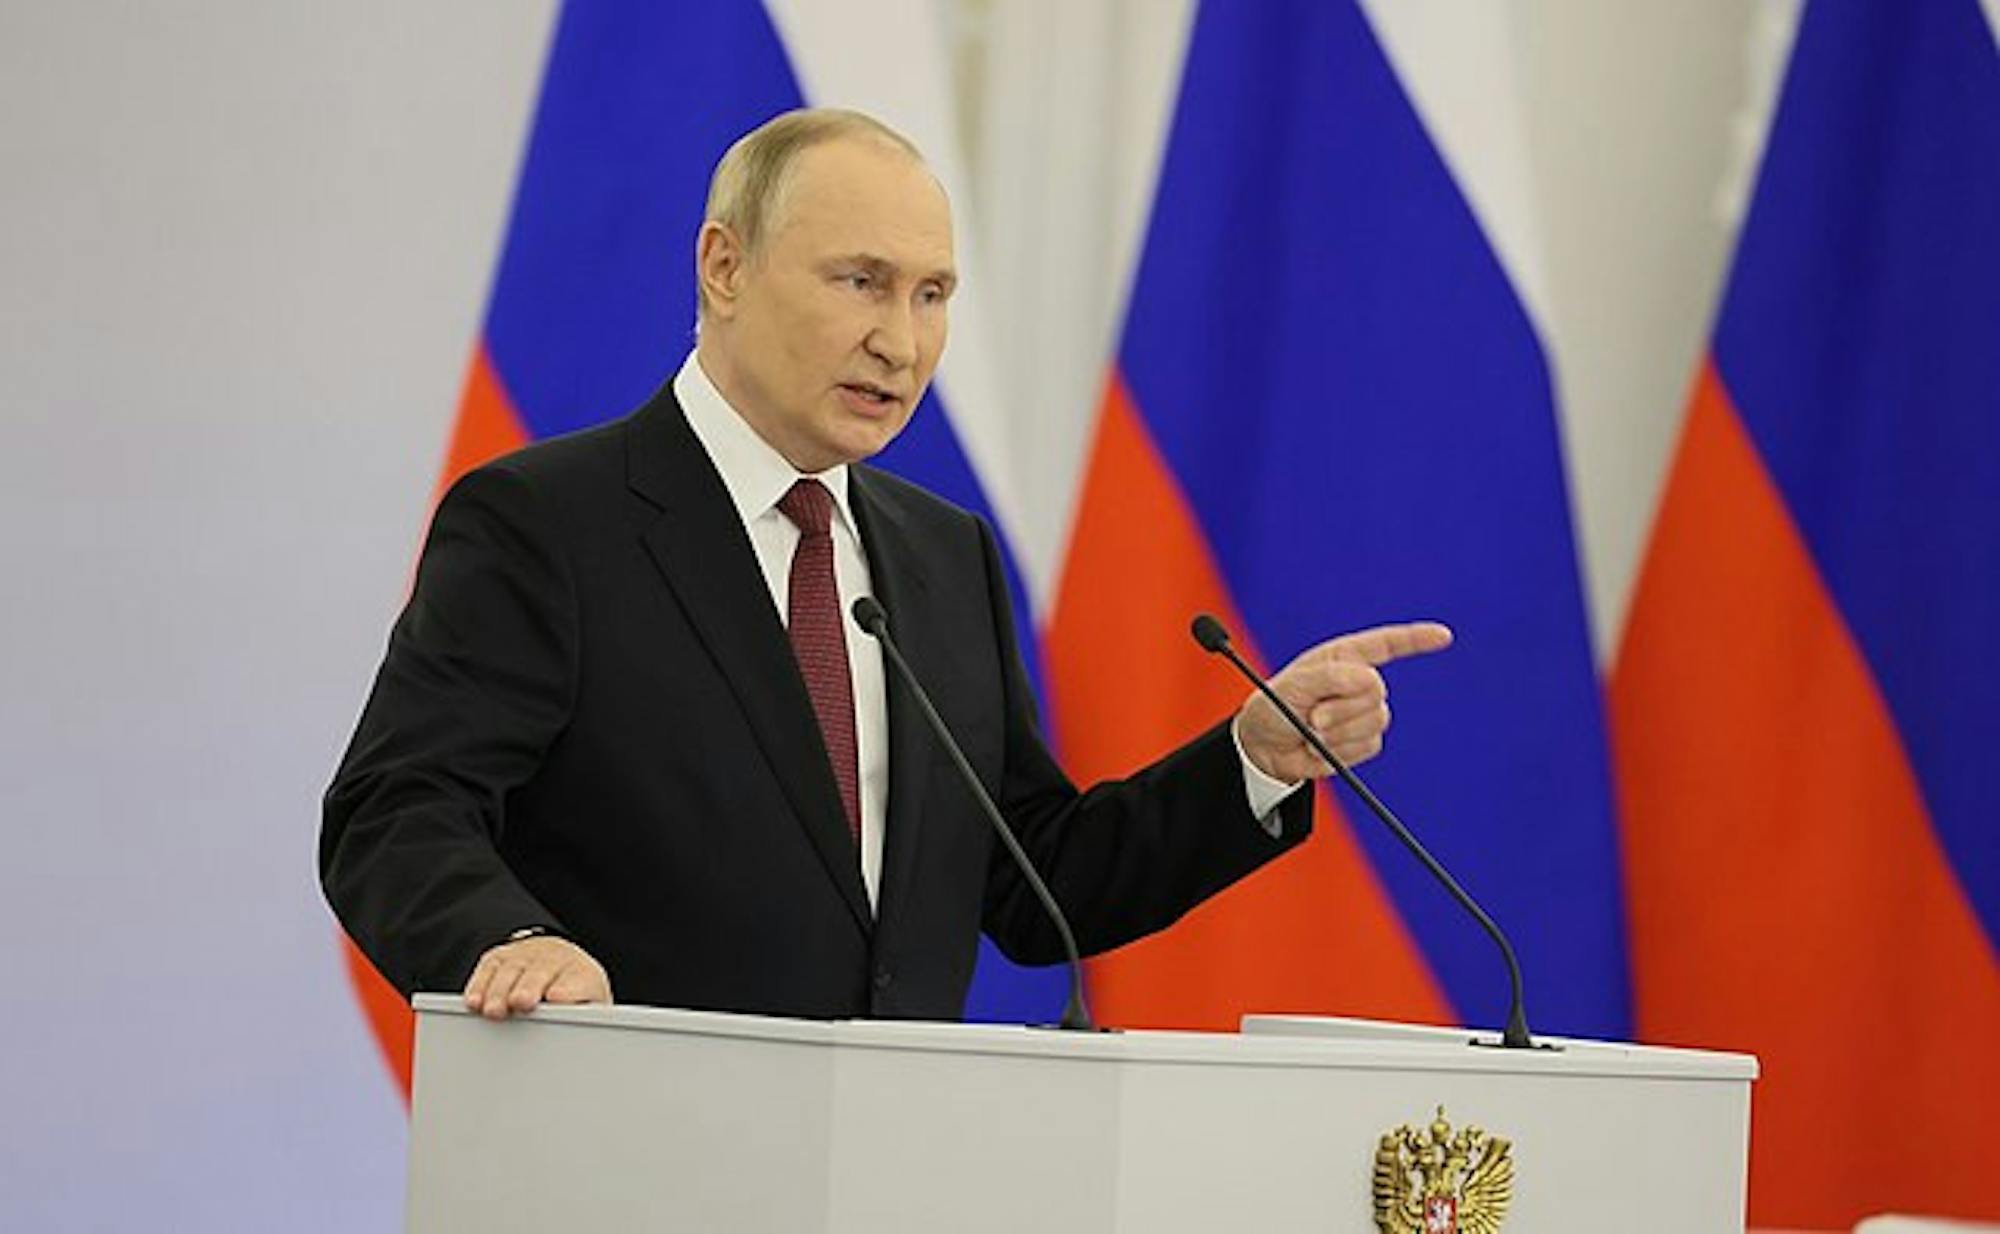 Vladimir_Putin_2022_Annexation_Speech